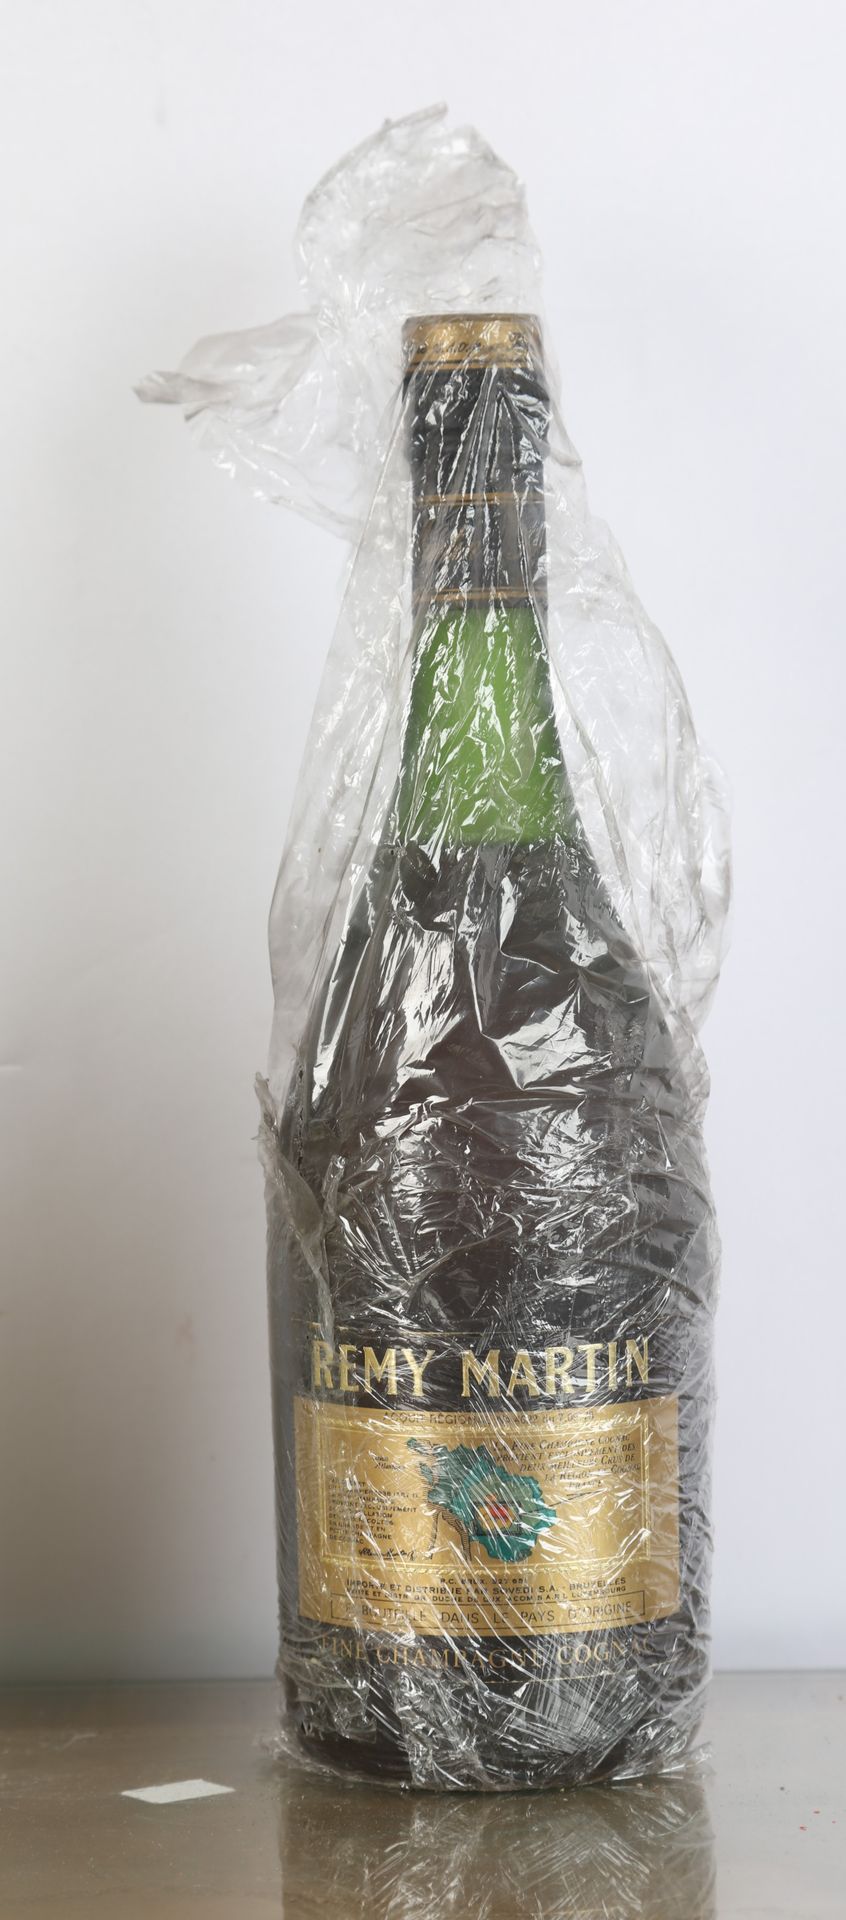 Null Coñac, Rémy Martin, (ref. 2) y - 1 botella de Dry Gin Gordons, (ref. 2)